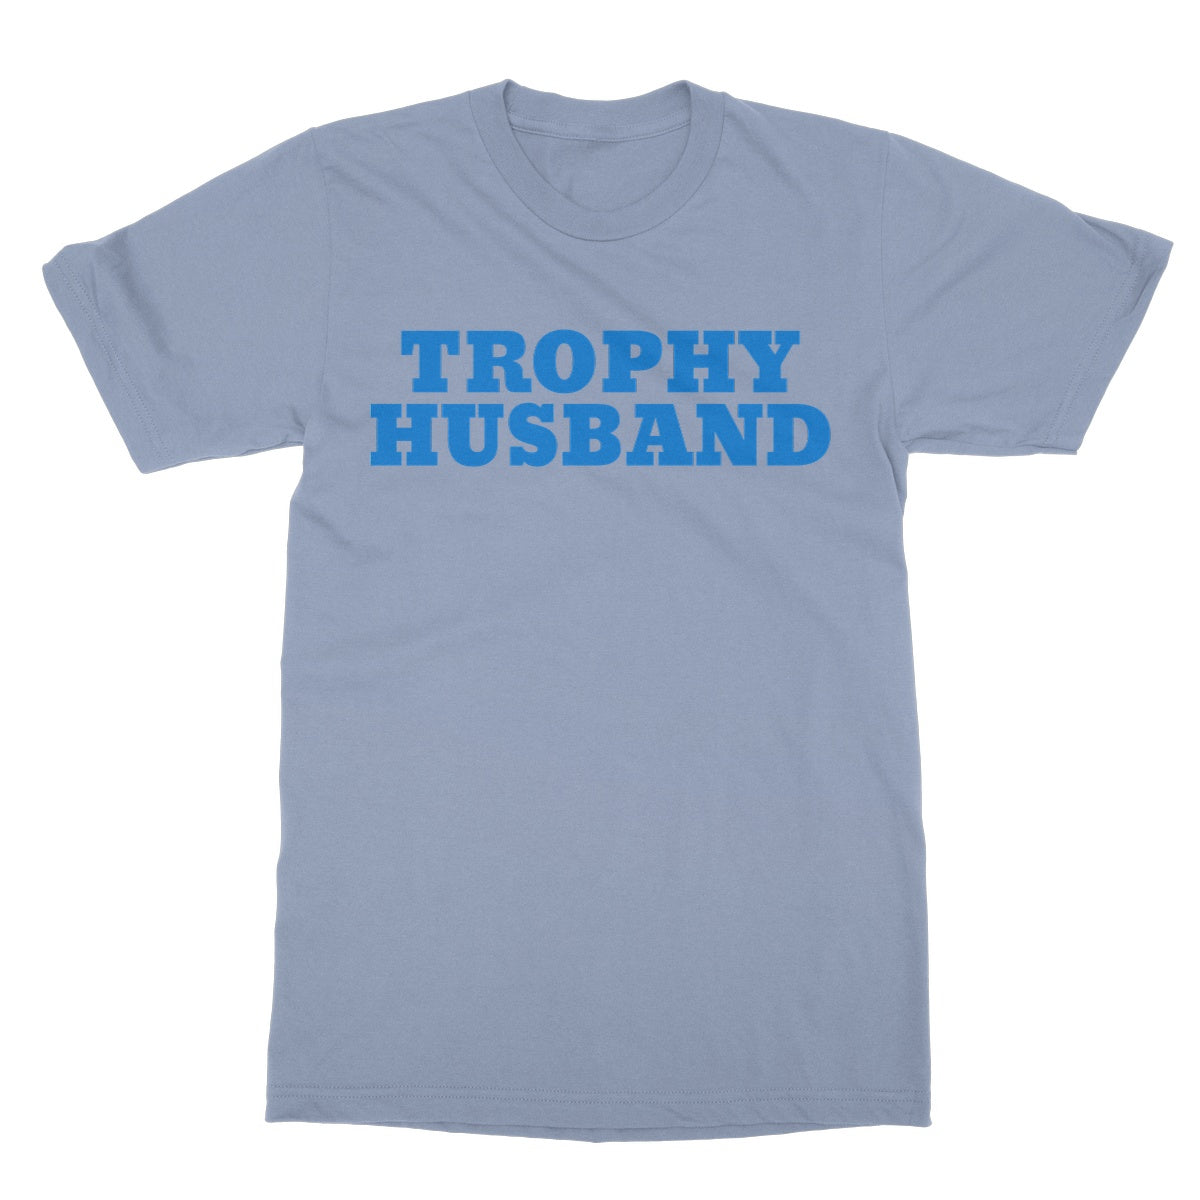 trophy husband t shirt light blue